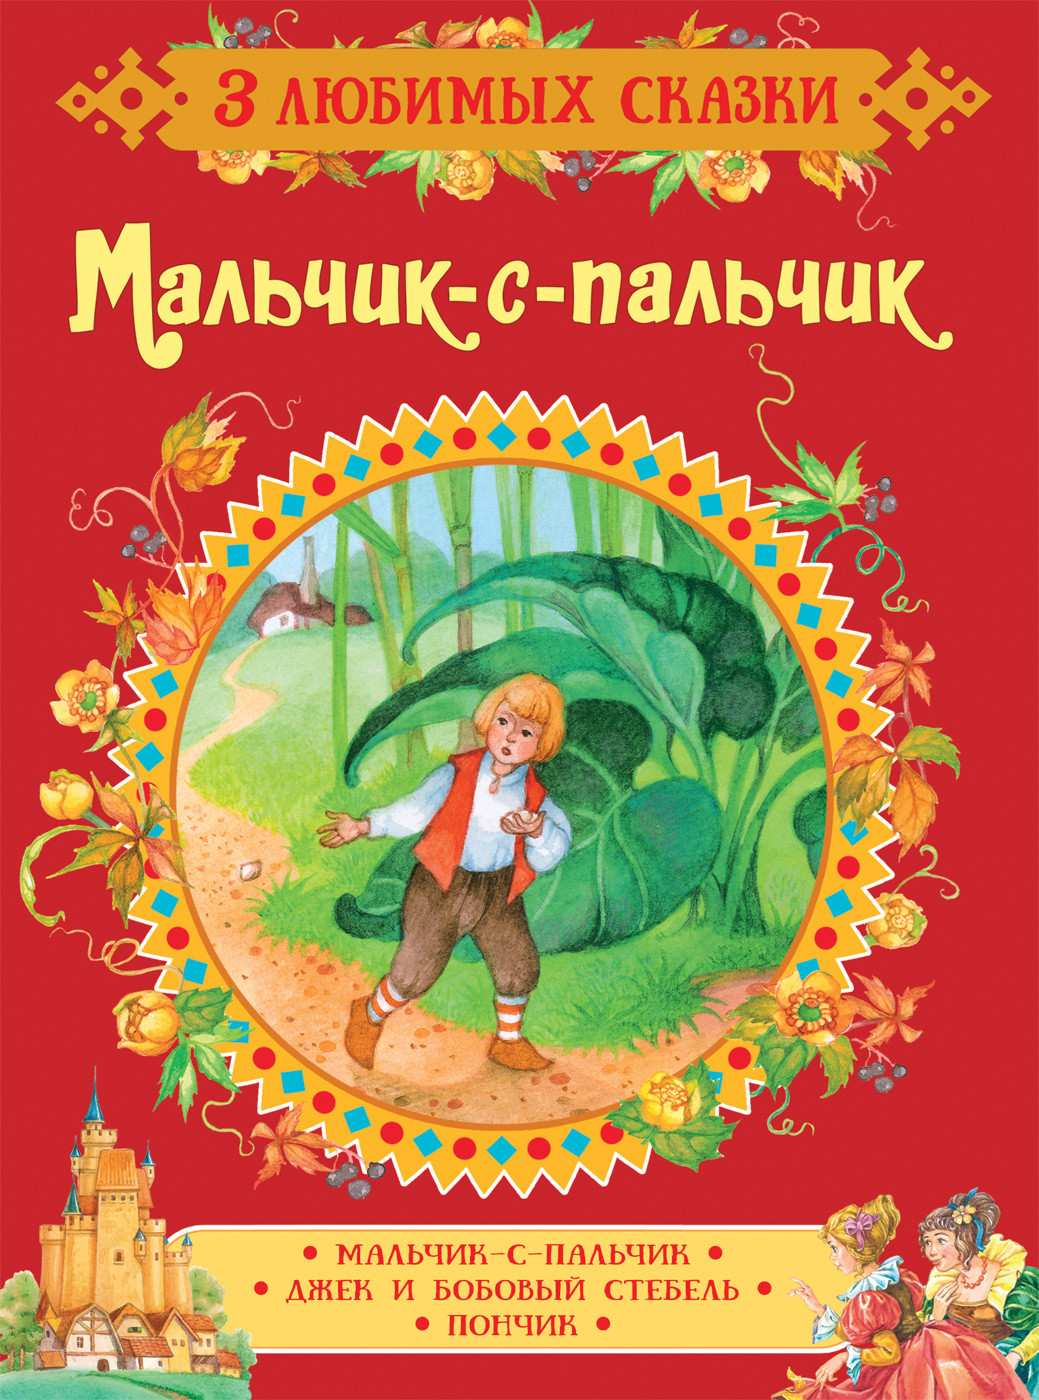 Мальчик с пальчик русская народная сказка читать. Мальчик-с-пальчик сказка. Мальчик с пальчик Перро книга.